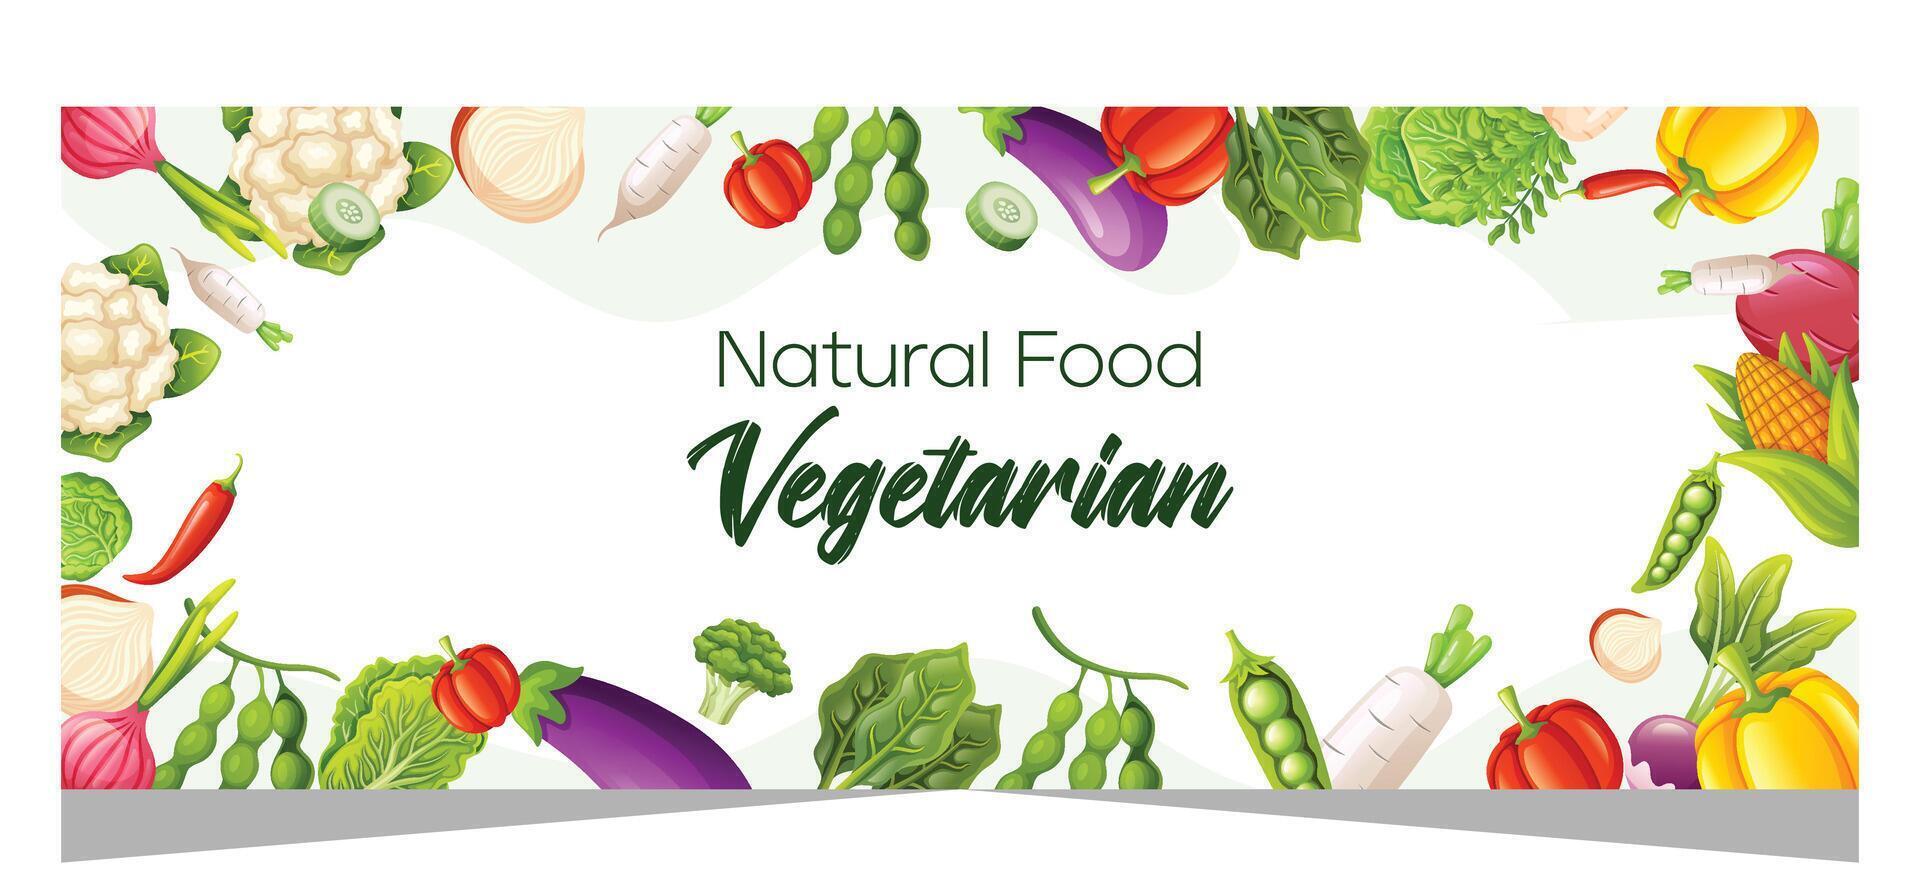 gesund Vegetarier Essen Banner Vorlage Design vektor